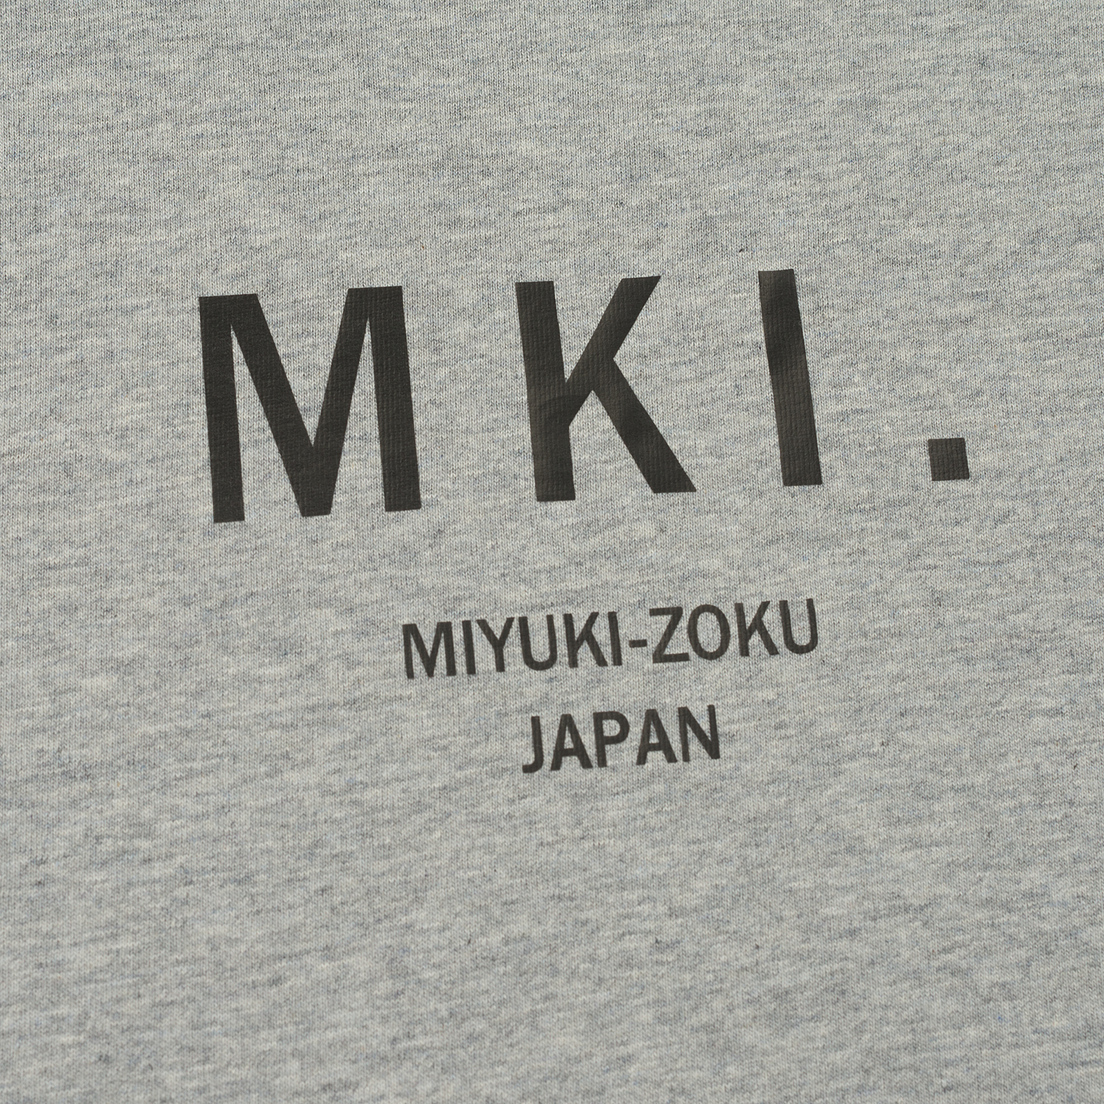 MKI Miyuki-Zoku Мужская футболка Classic Logo